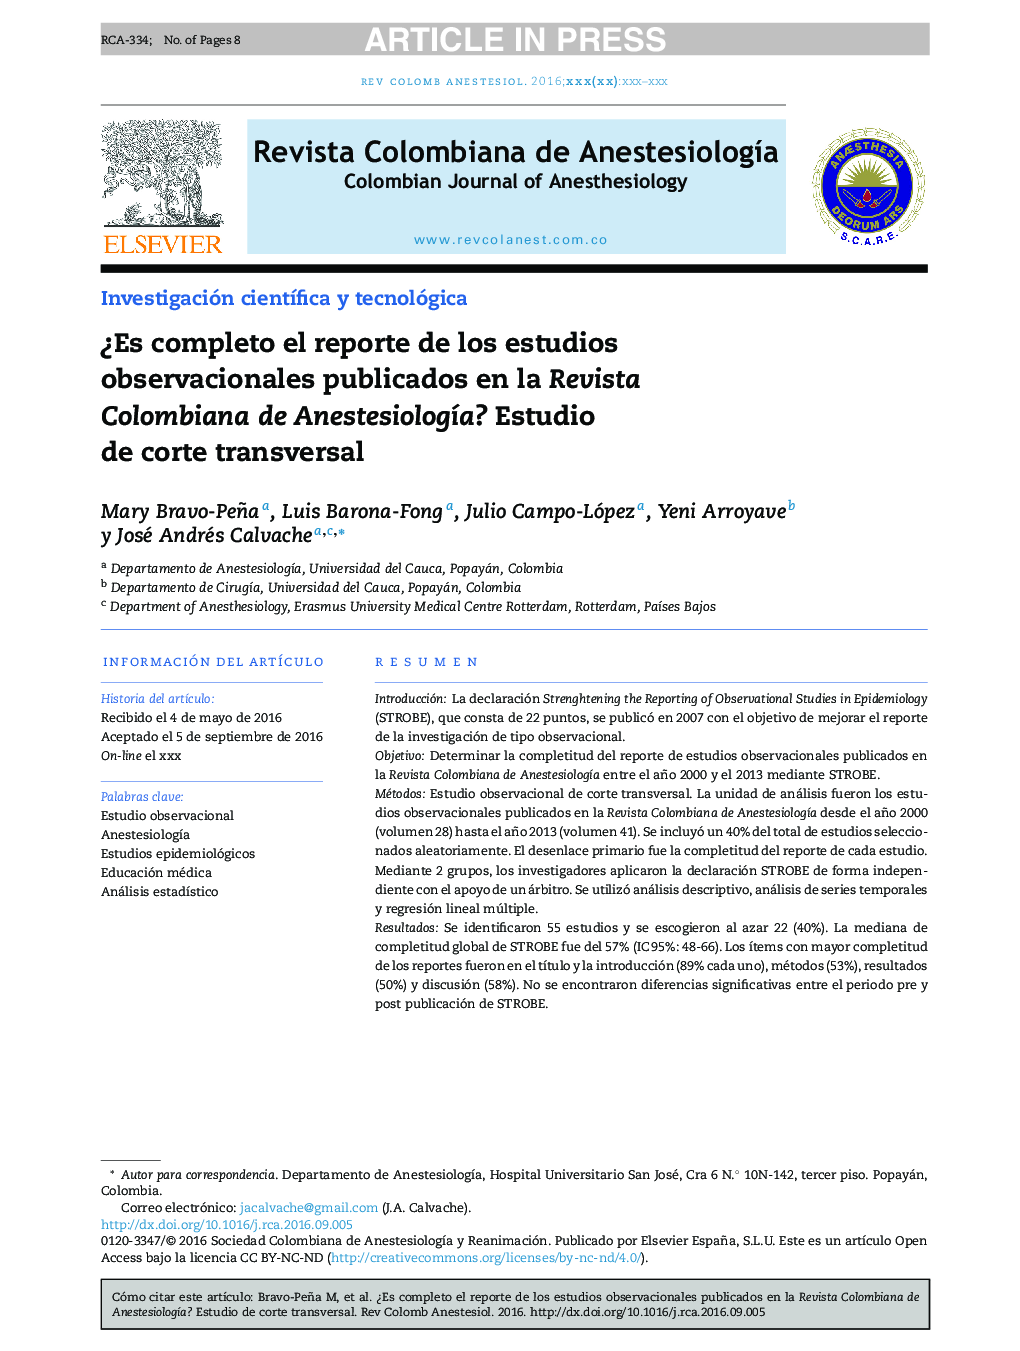 Â¿Es completo el reporte de los estudios observacionales publicados en la Revista Colombiana de AnestesiologÃ­a? Estudio de corte transversal